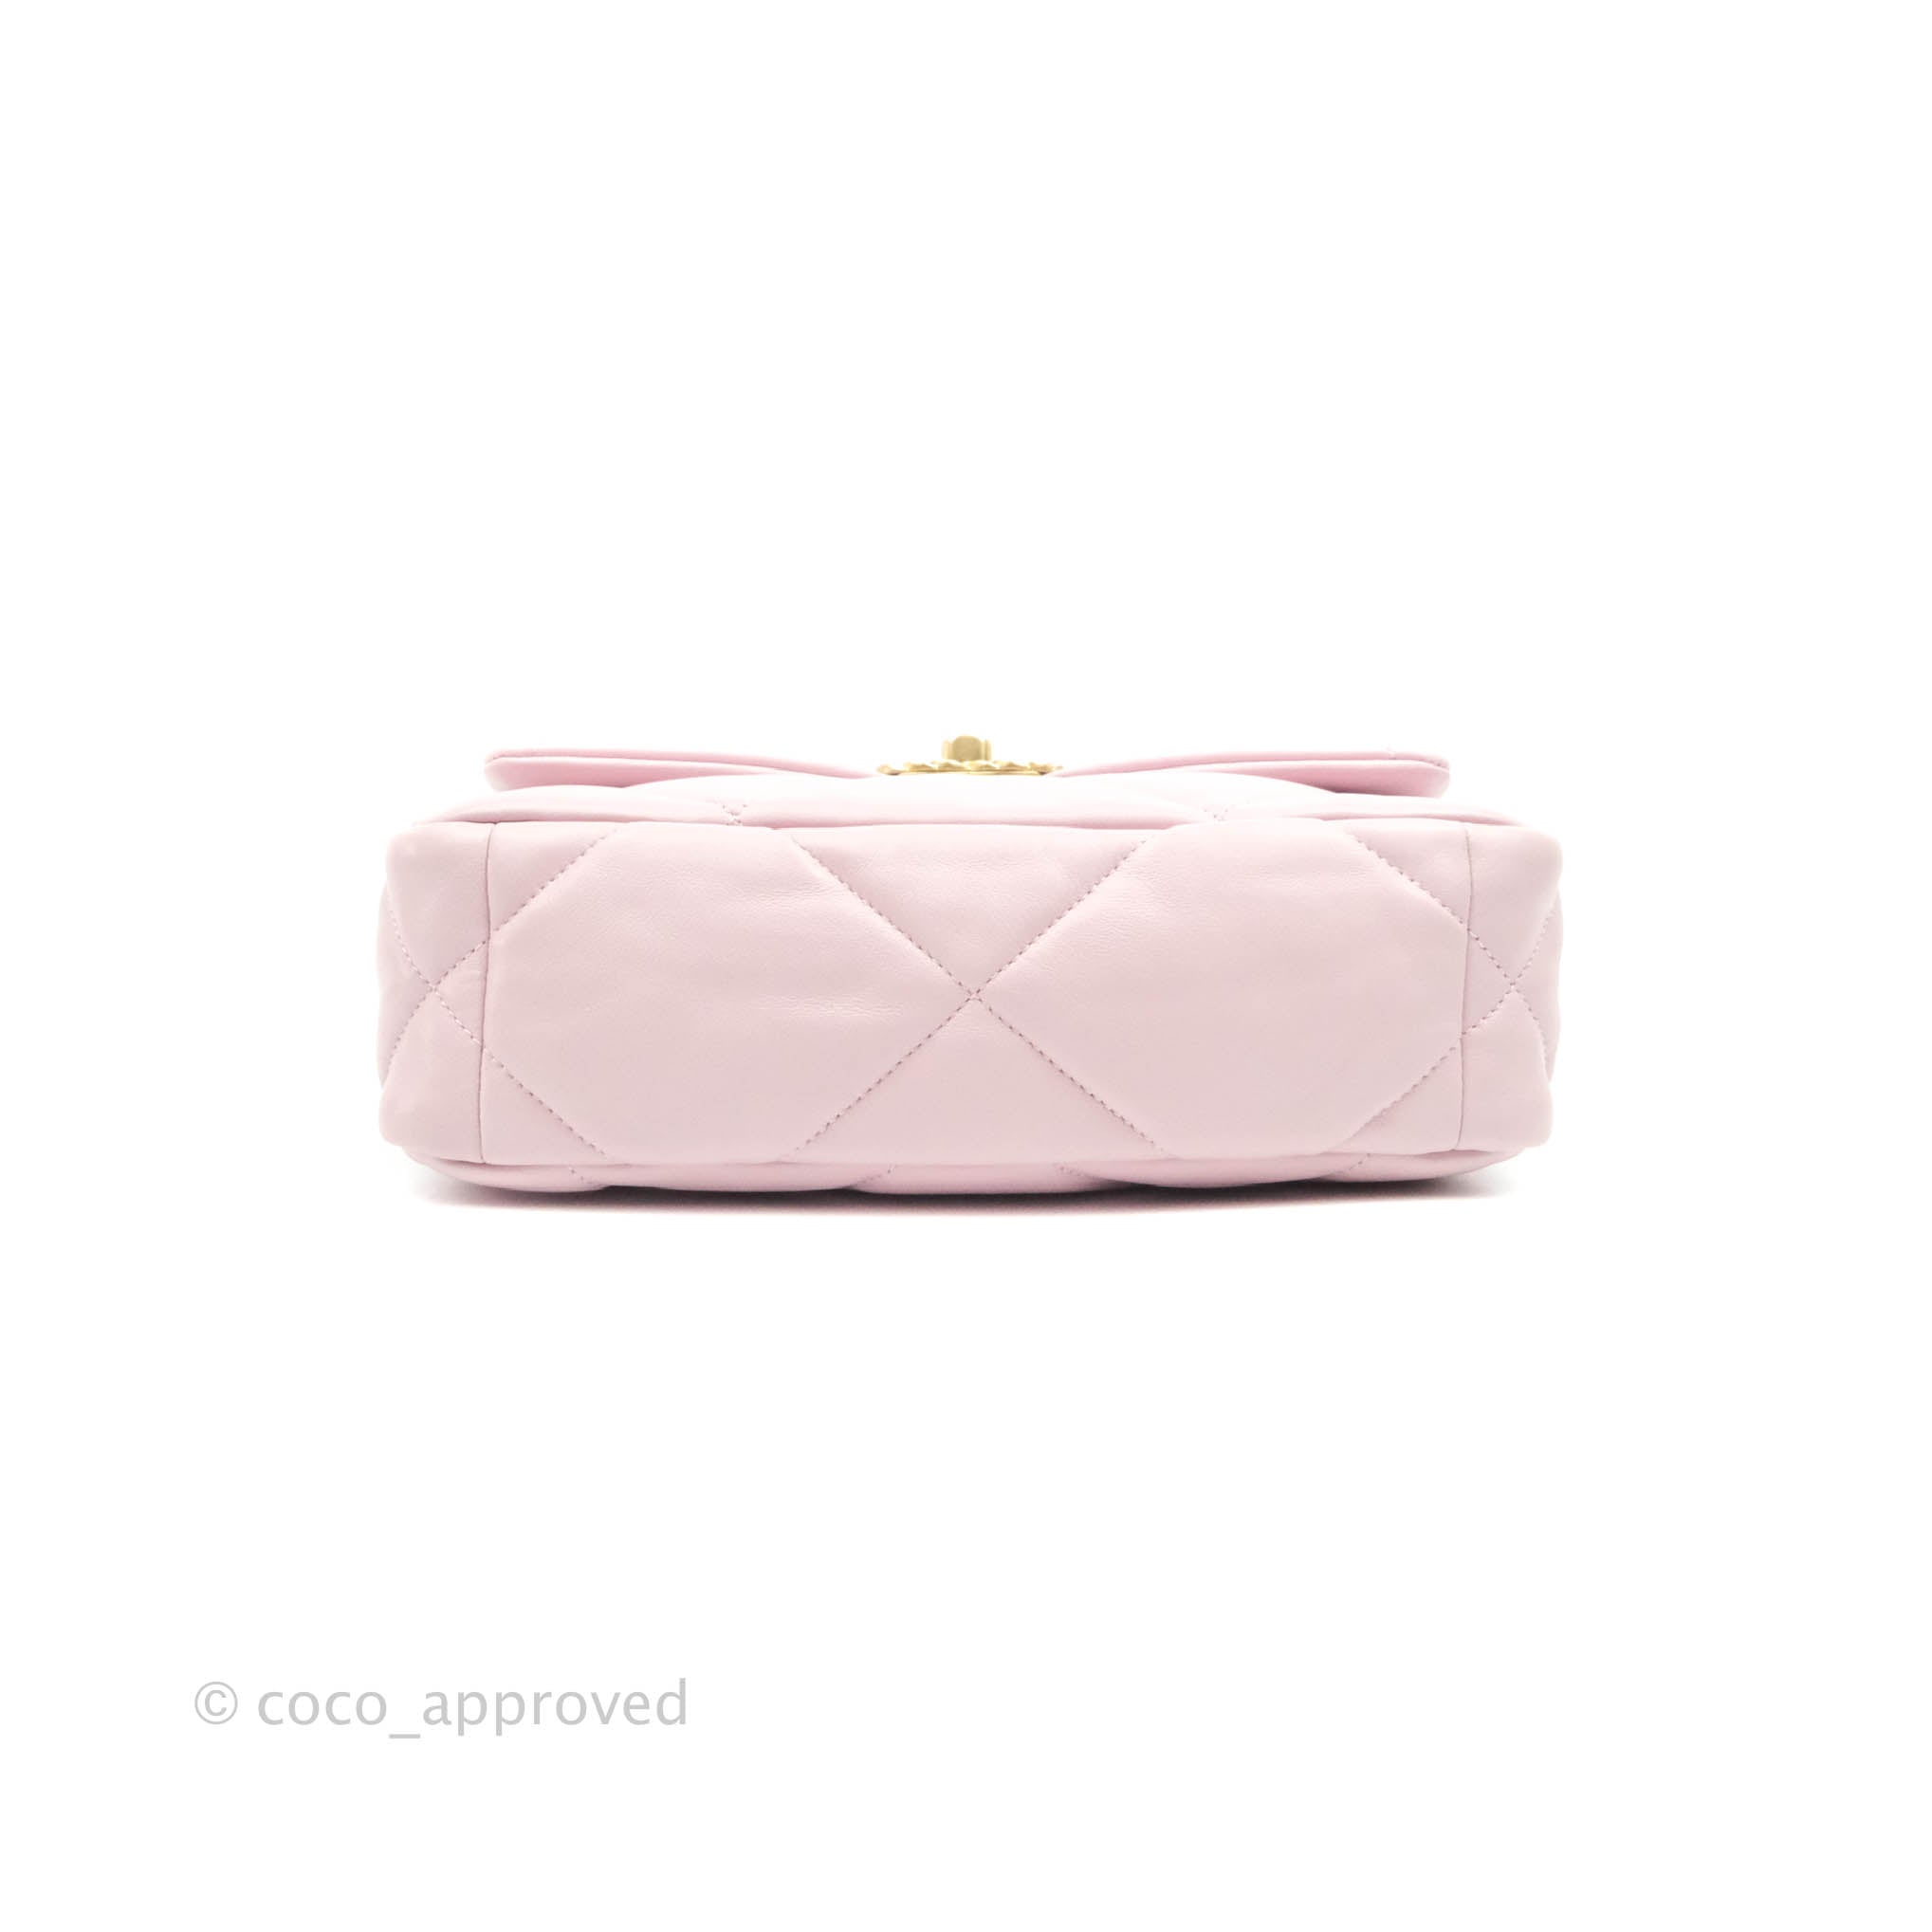 Chanel 19 Flap Bag Lamb Pink | SACLÀB